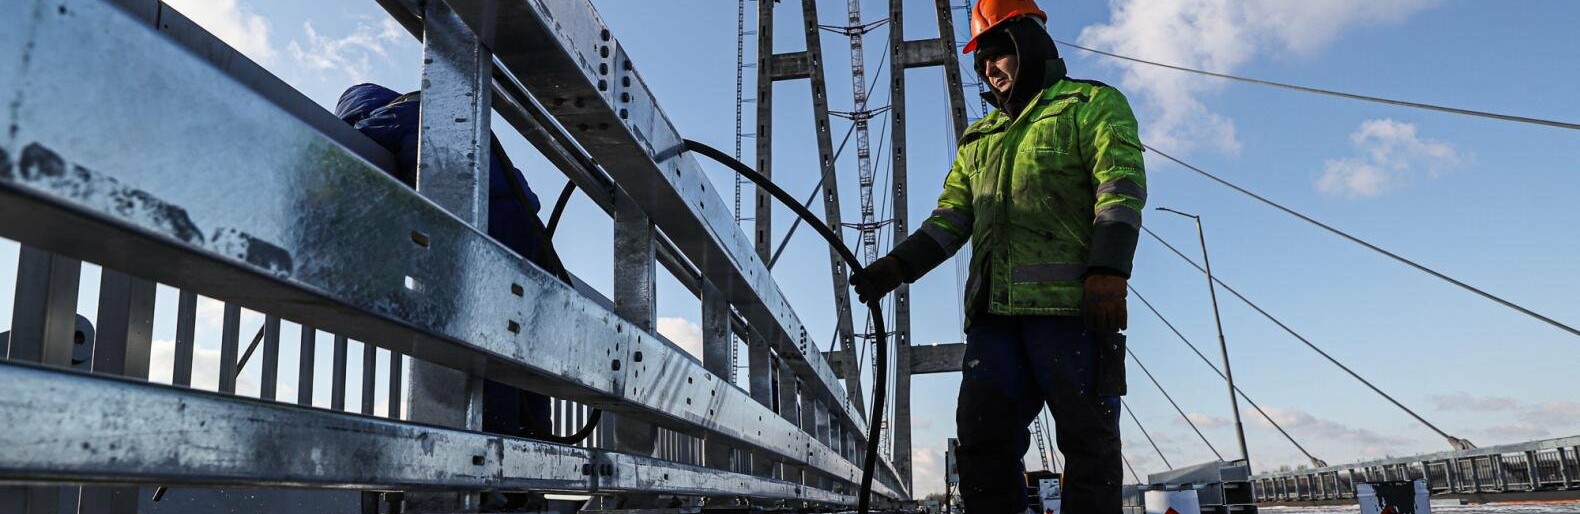 Новый вантовый мост в Запорожье не откроют к концу года, как обещали